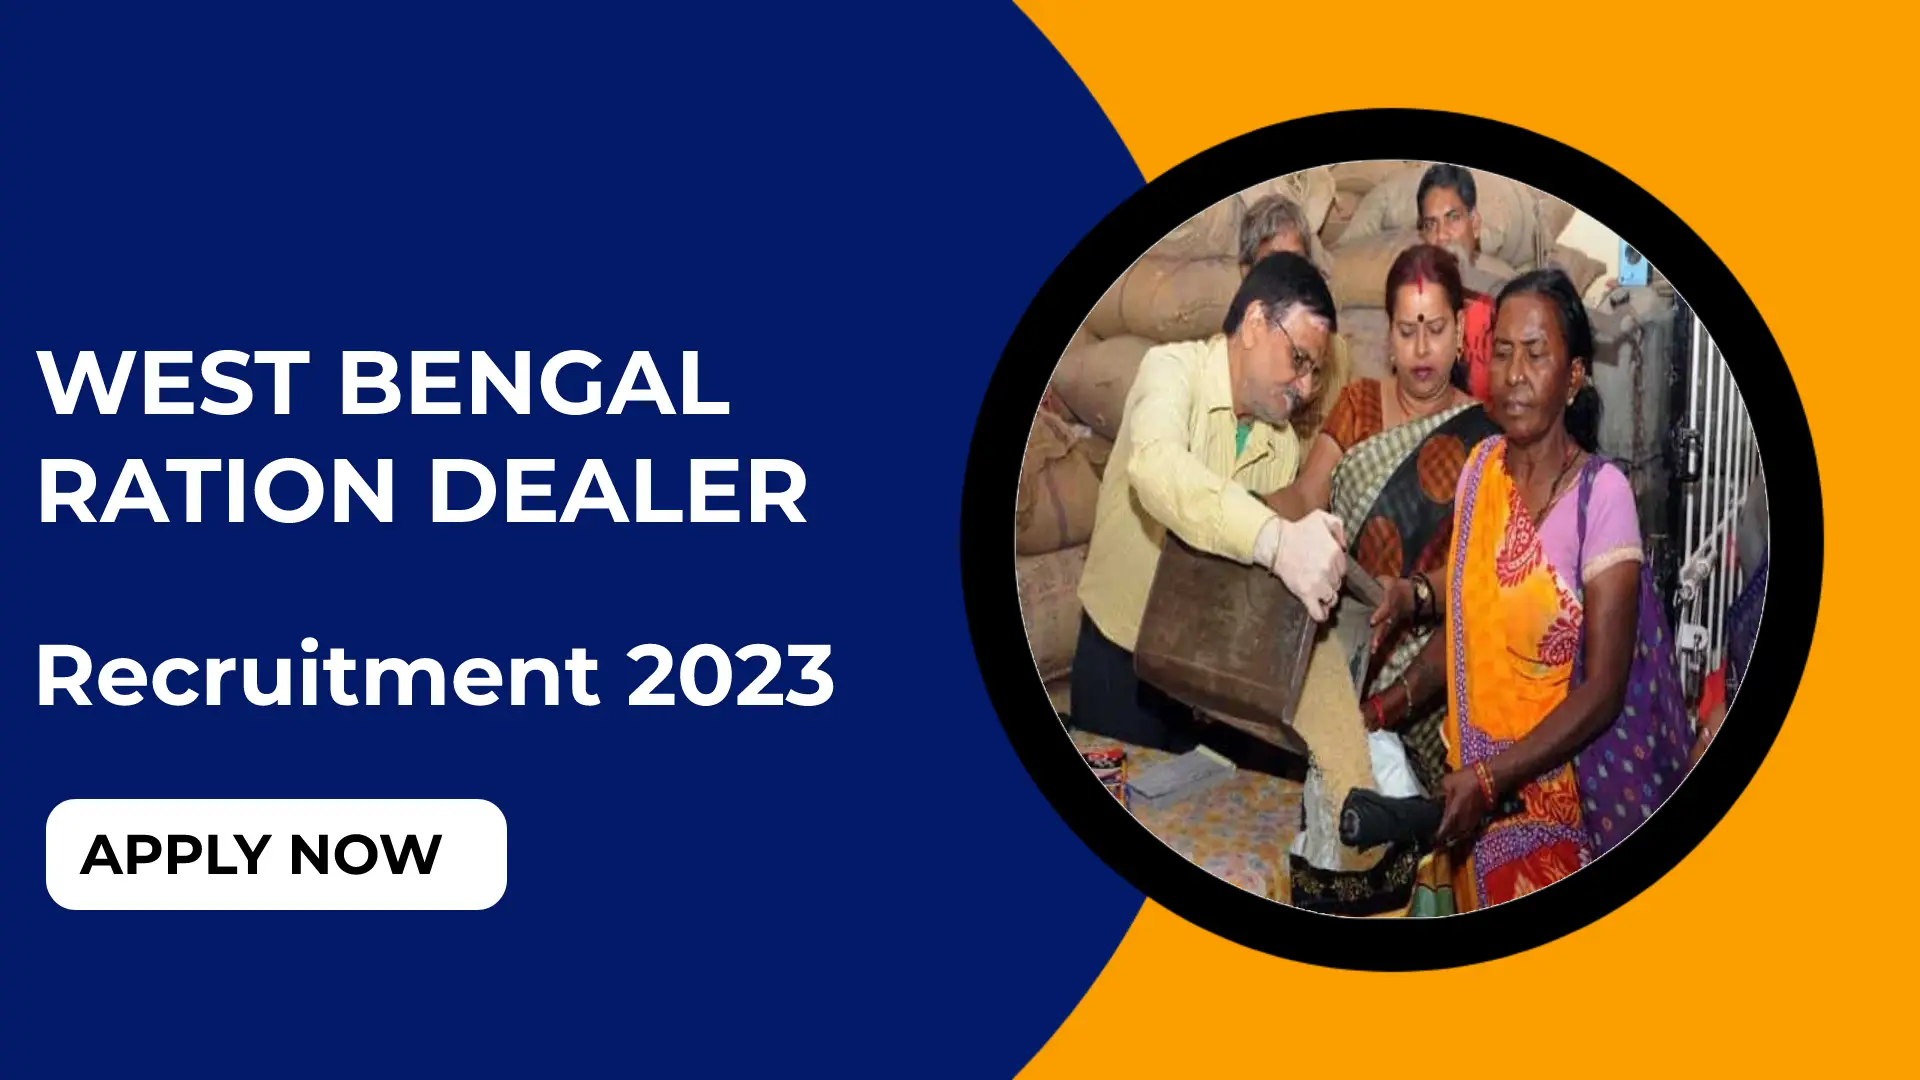 West Bengal Ration Dealer Application